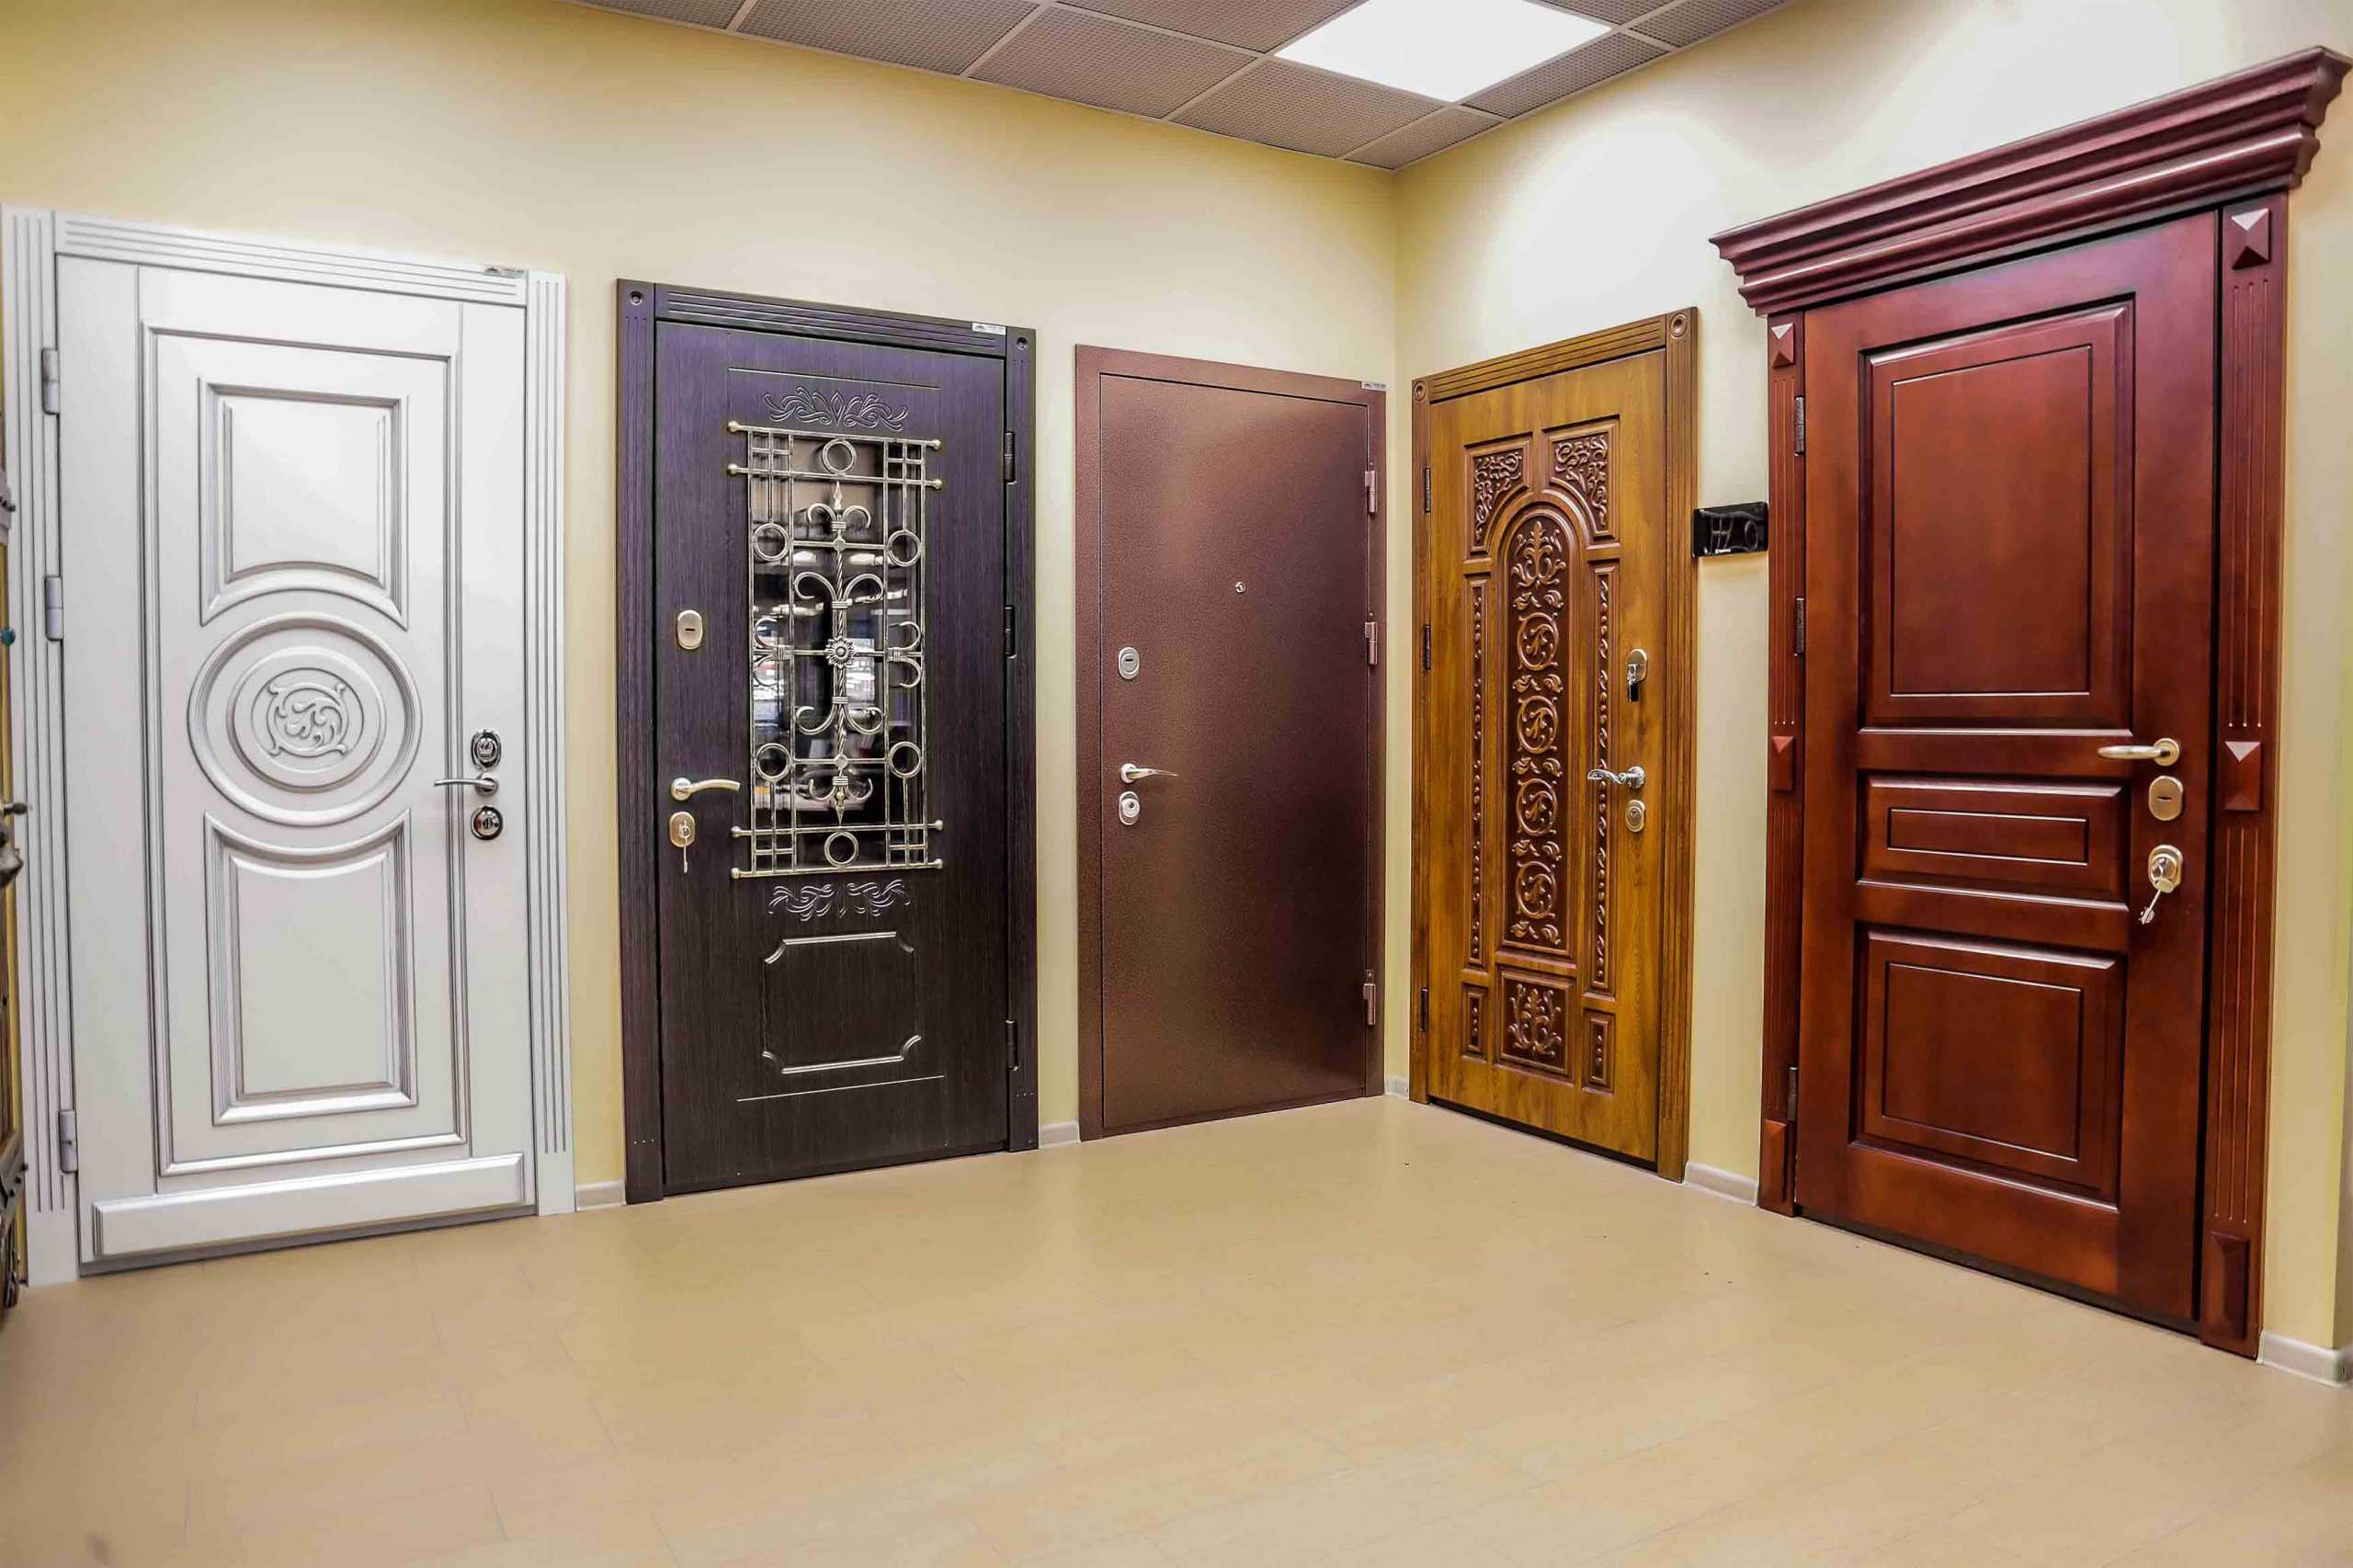 Надежные входные двери. как правильно выбрать качественную дверь?